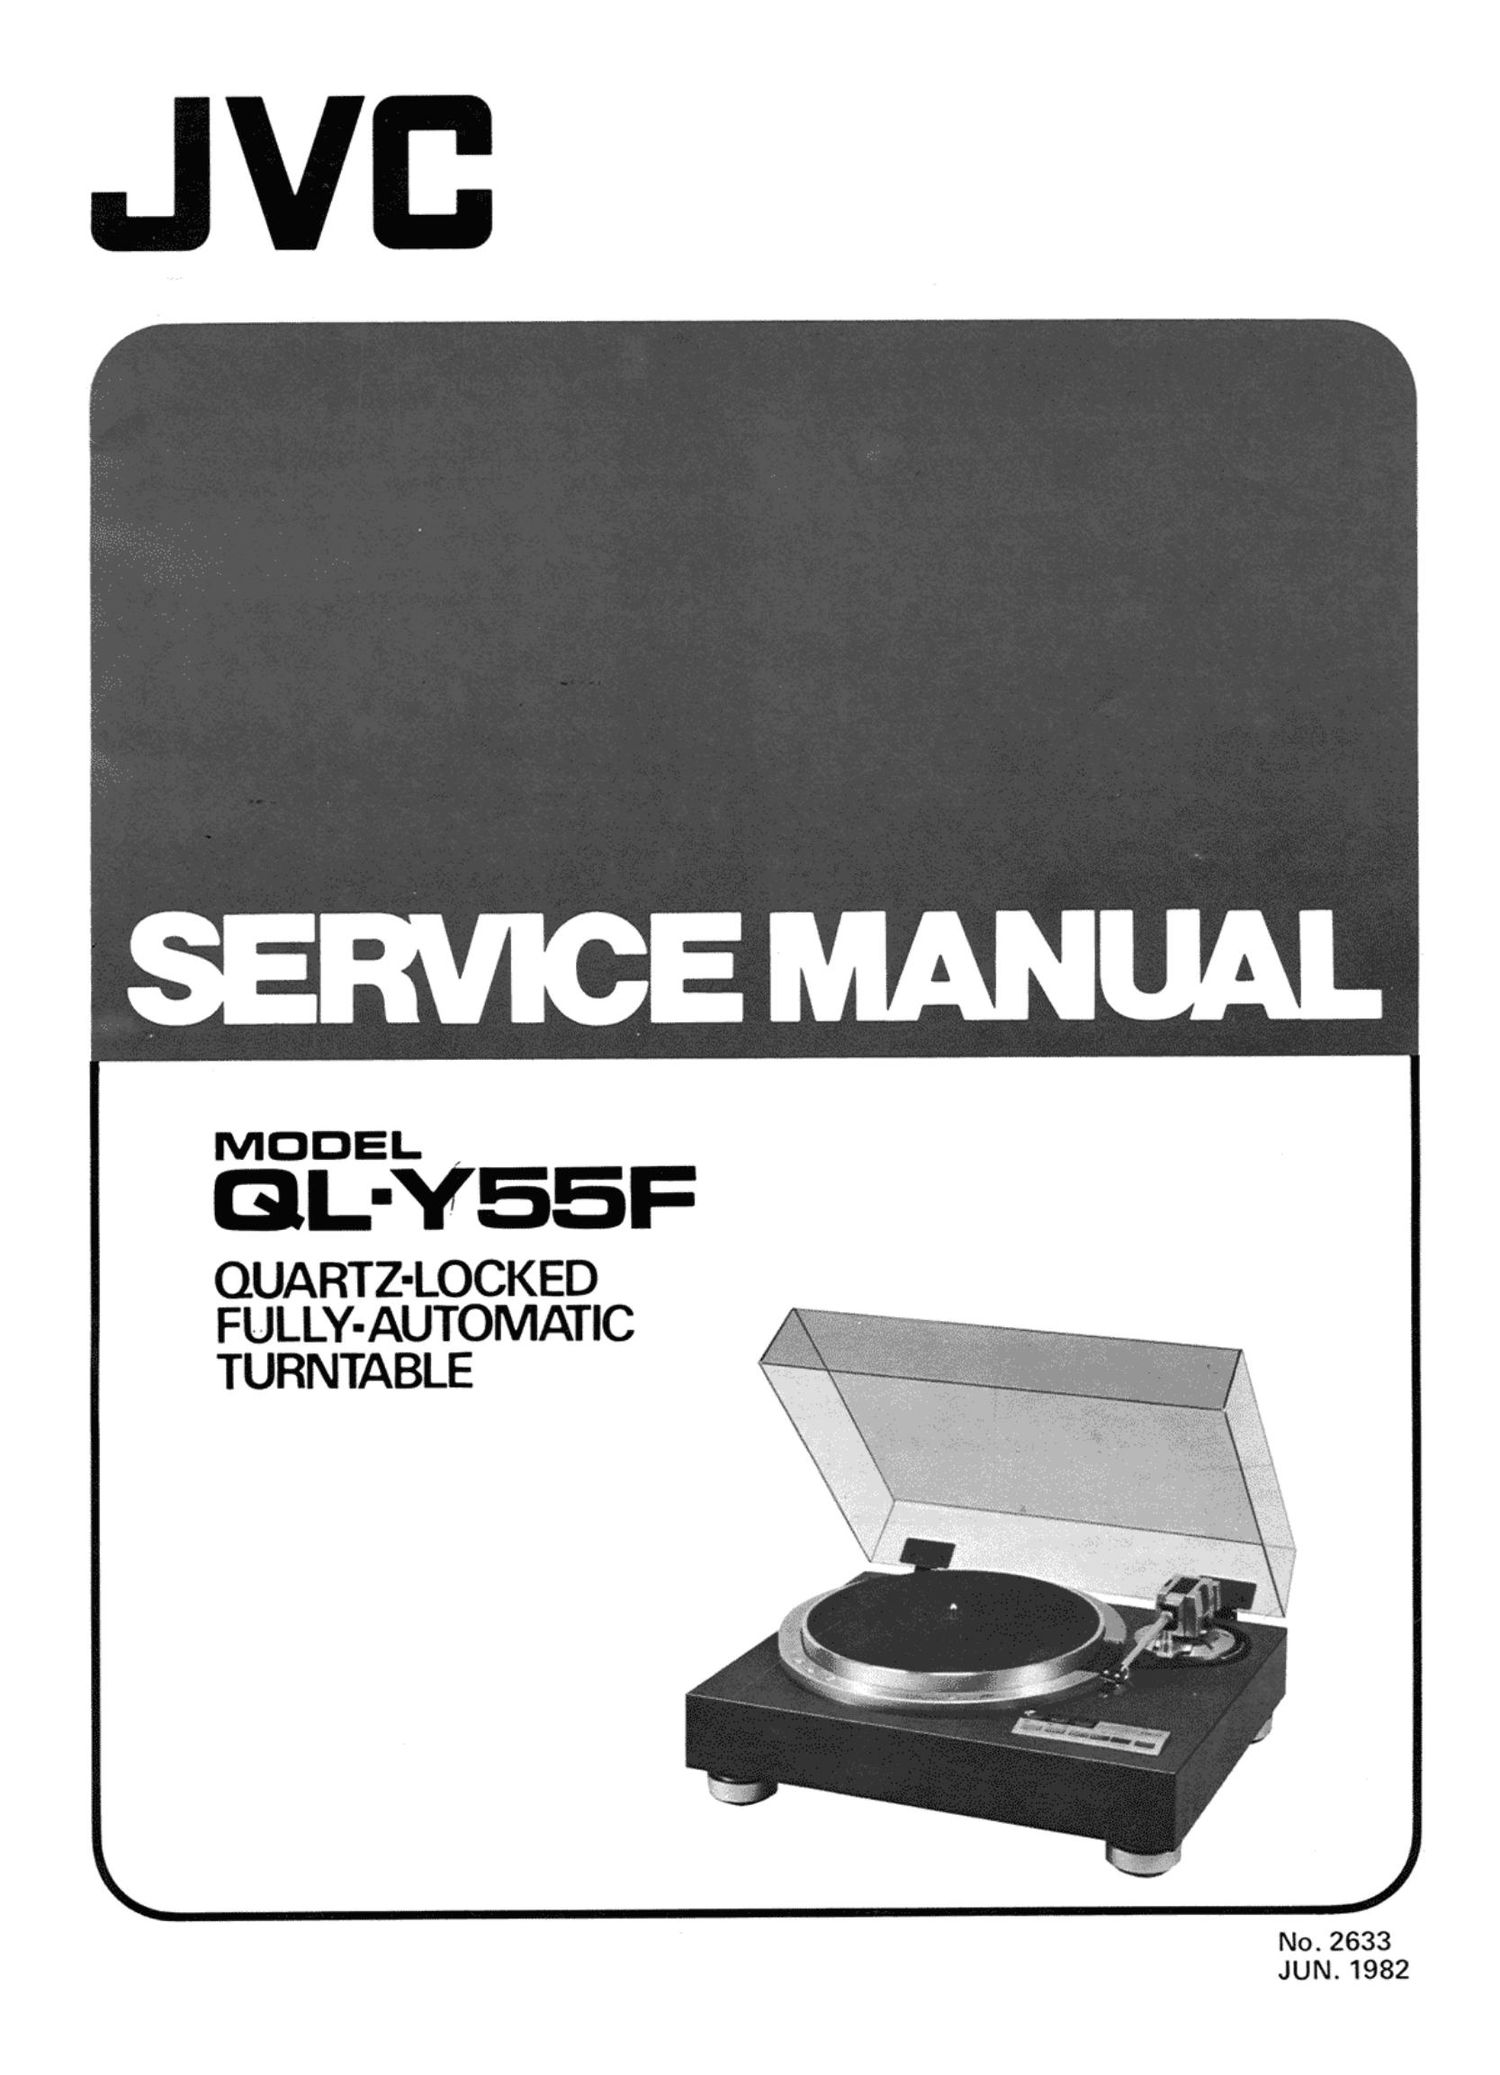 Service Manual-Anleitung für JVC QL-Y55 F 